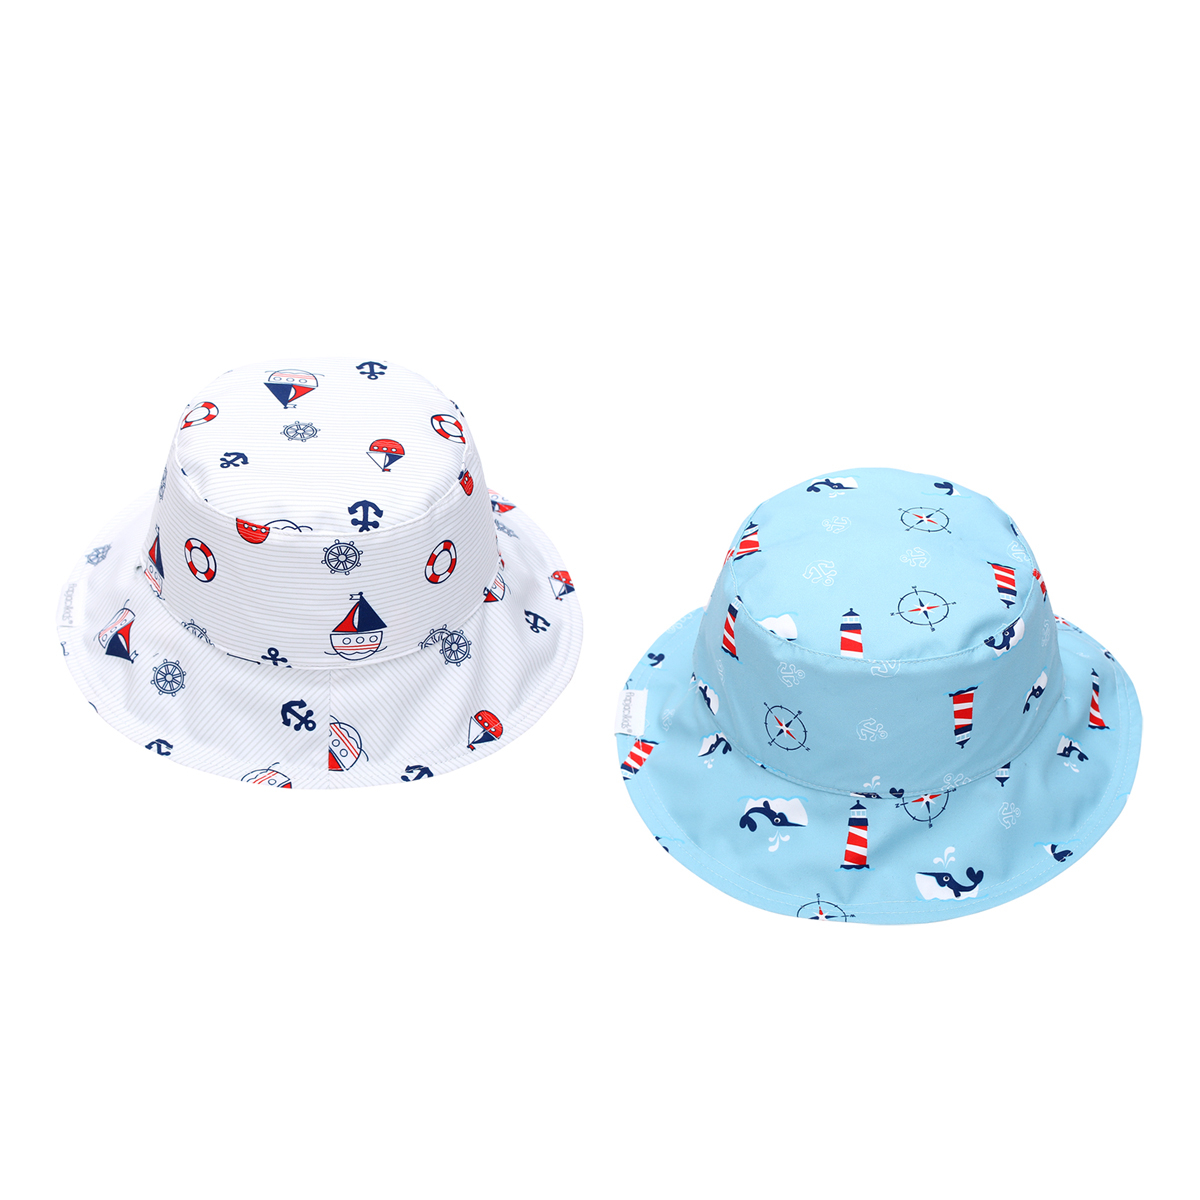 Παιδικό Καπέλο 2 Όψεων Με Προστασία UV FlapjackKids Nautical 6-24 Μηνών 6-24 Μηνών